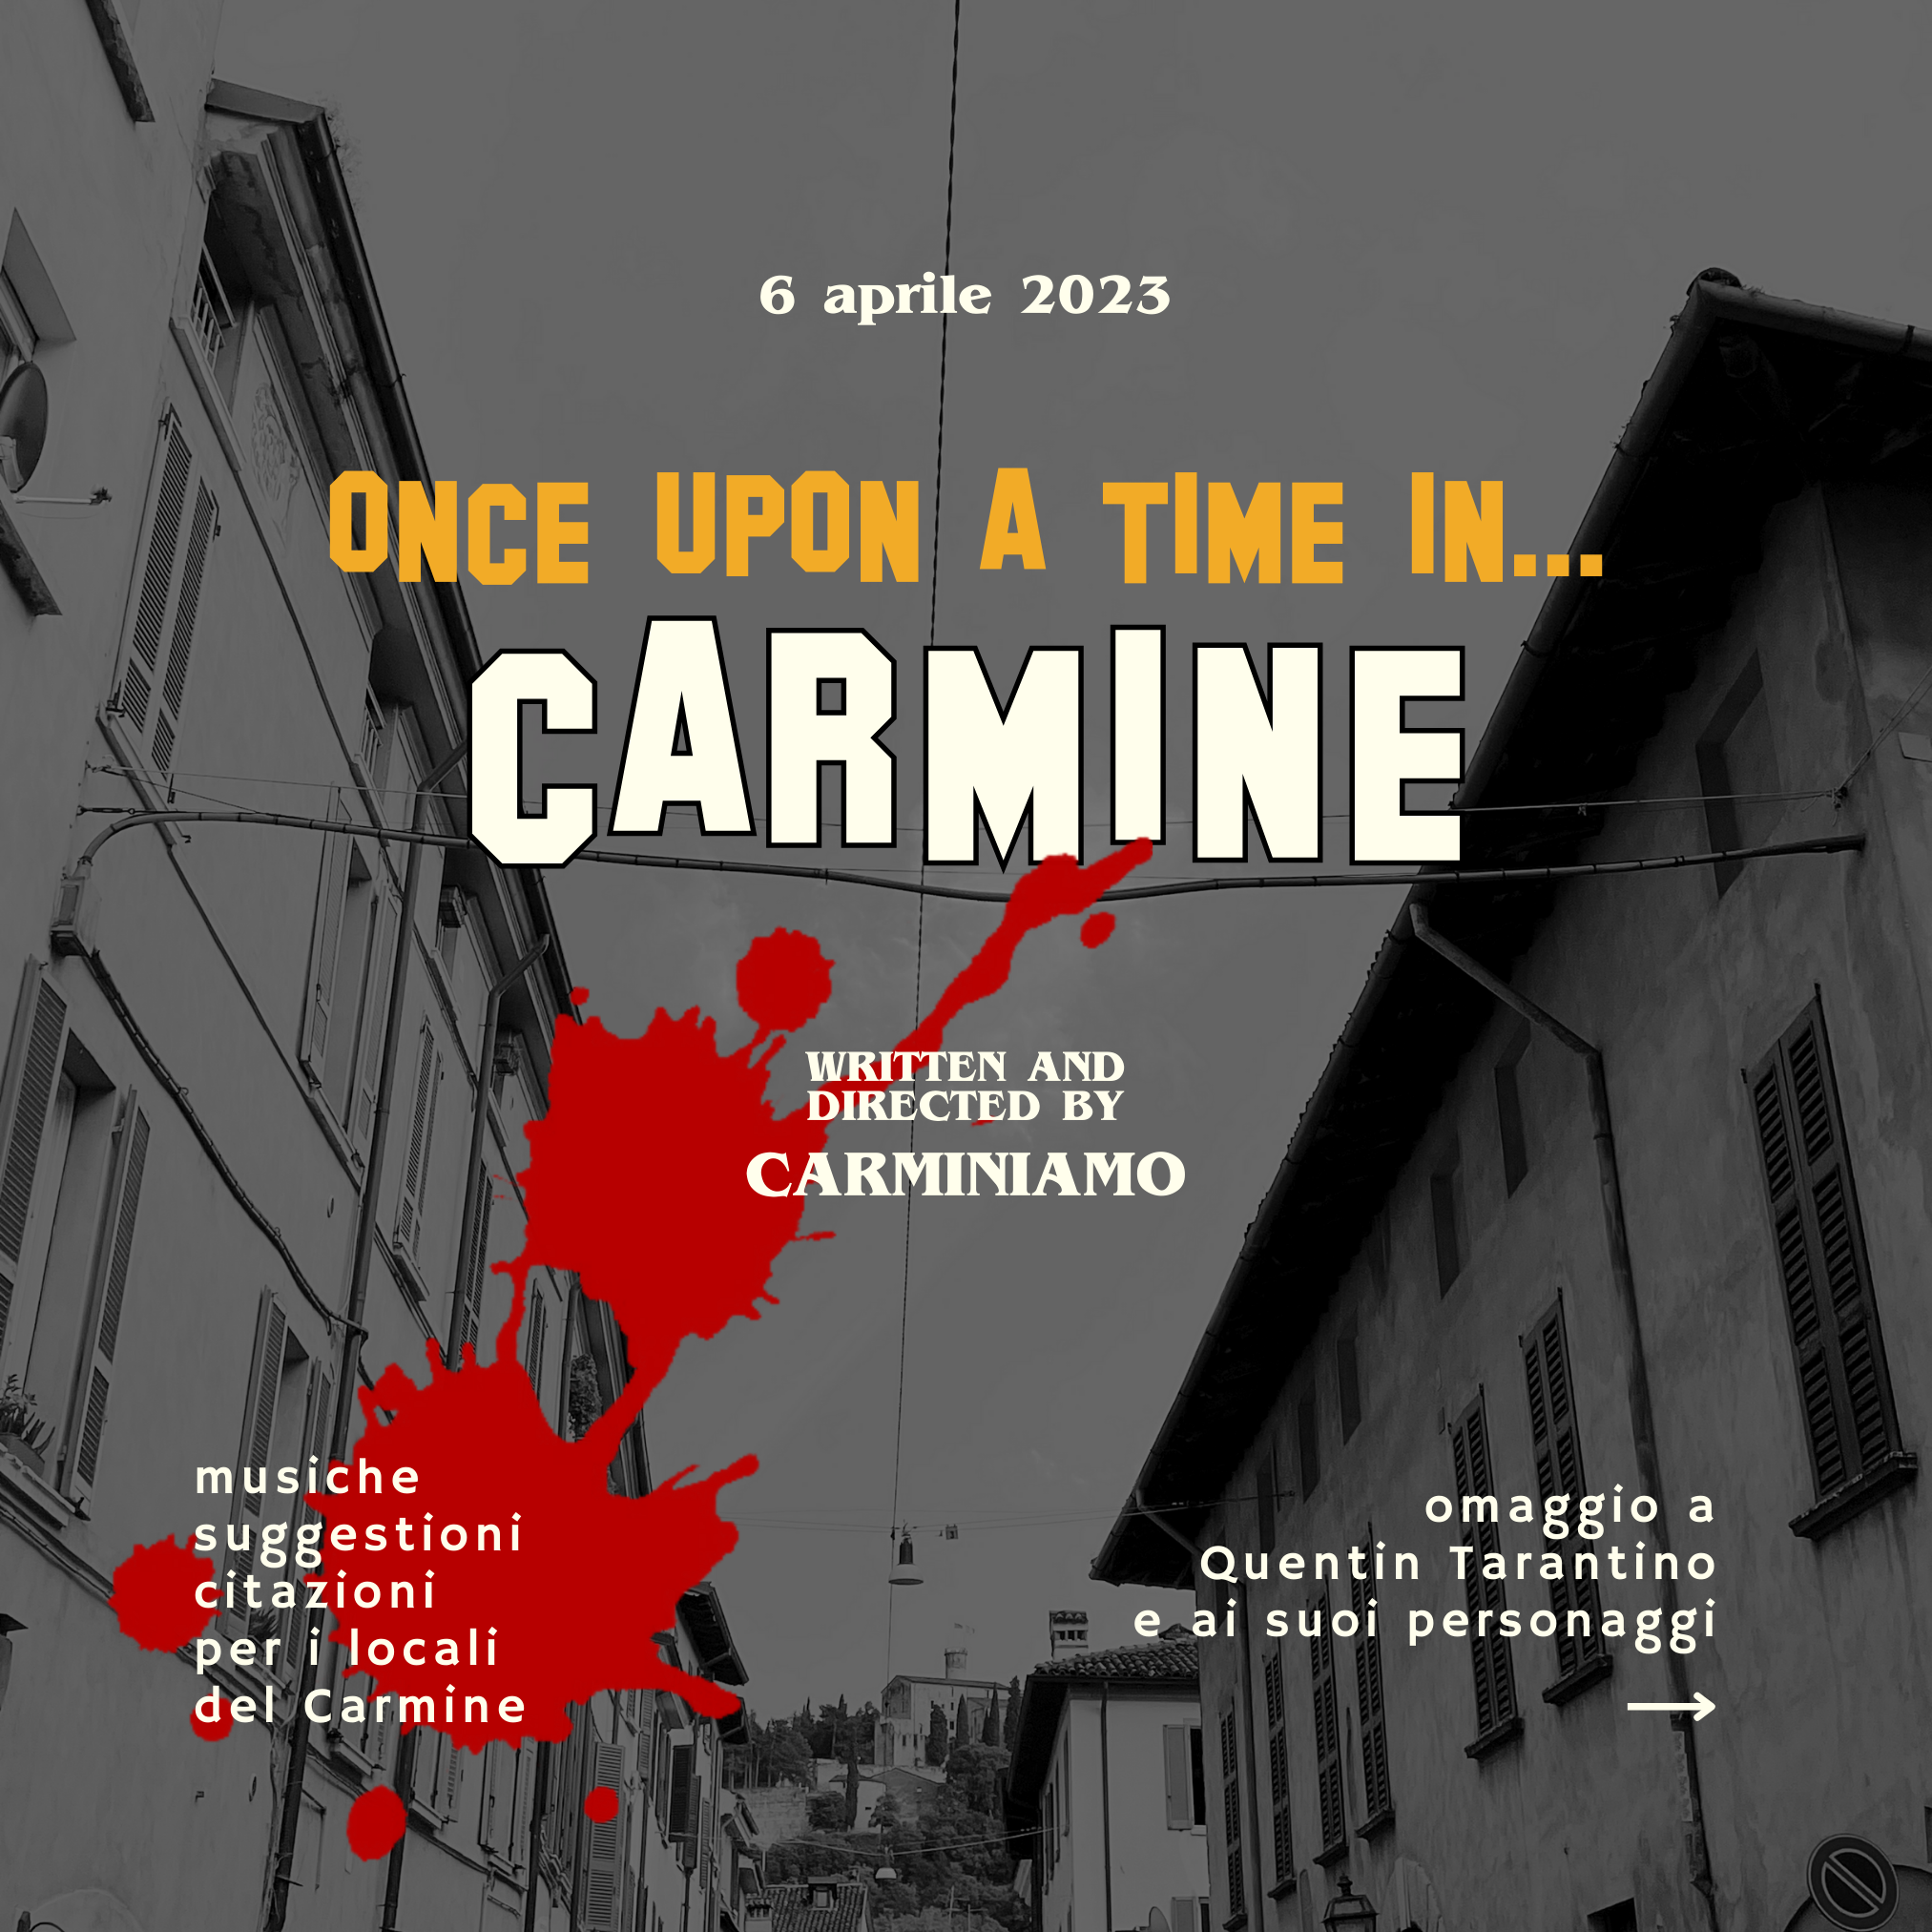 Once Upon a Time in Carmine Giovedì 6 aprile 2023 presso i locali del Quartiere Carmine Brescia Omaggio a Tarantino